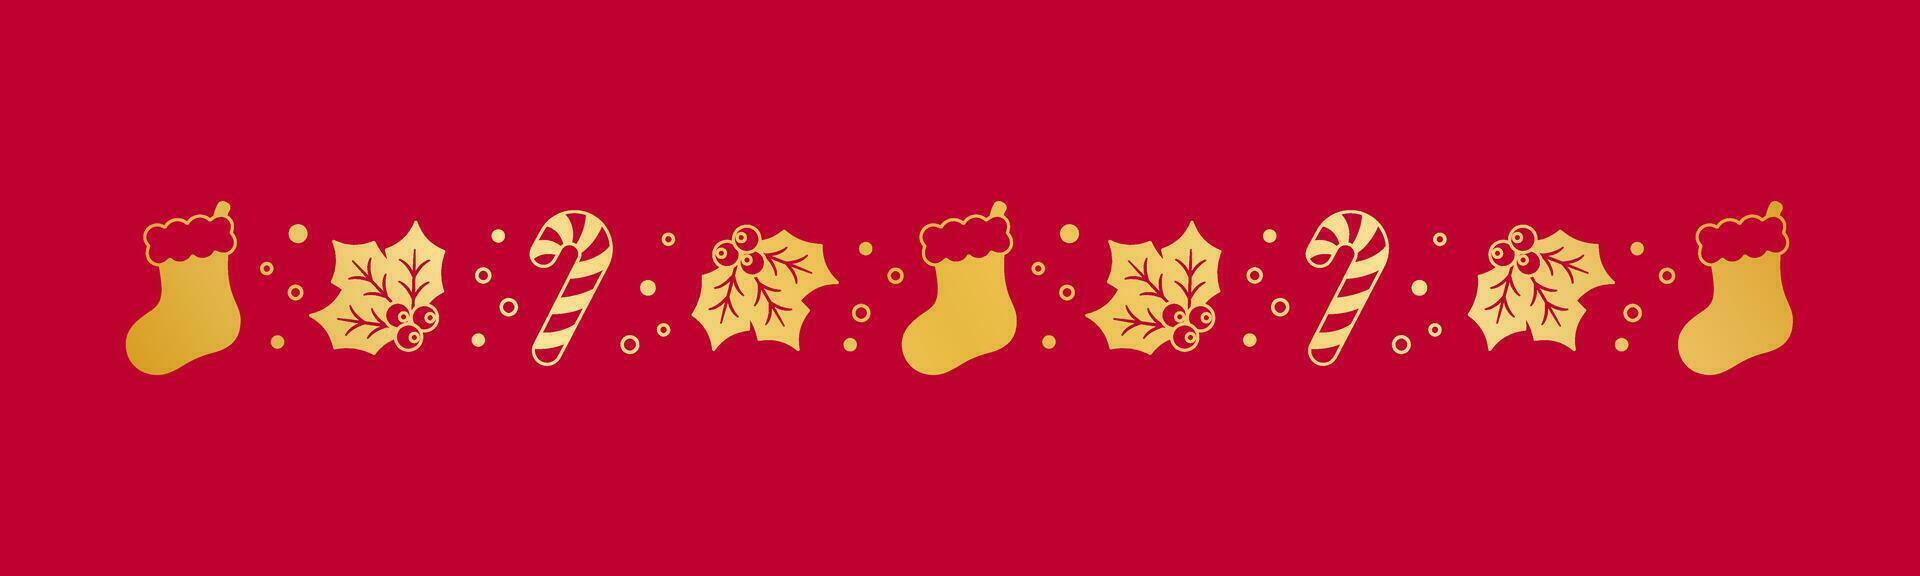 oro Navidad temática decorativo frontera y texto divisor, Navidad media, caramelo caña y muérdago modelo silueta. vector ilustración.